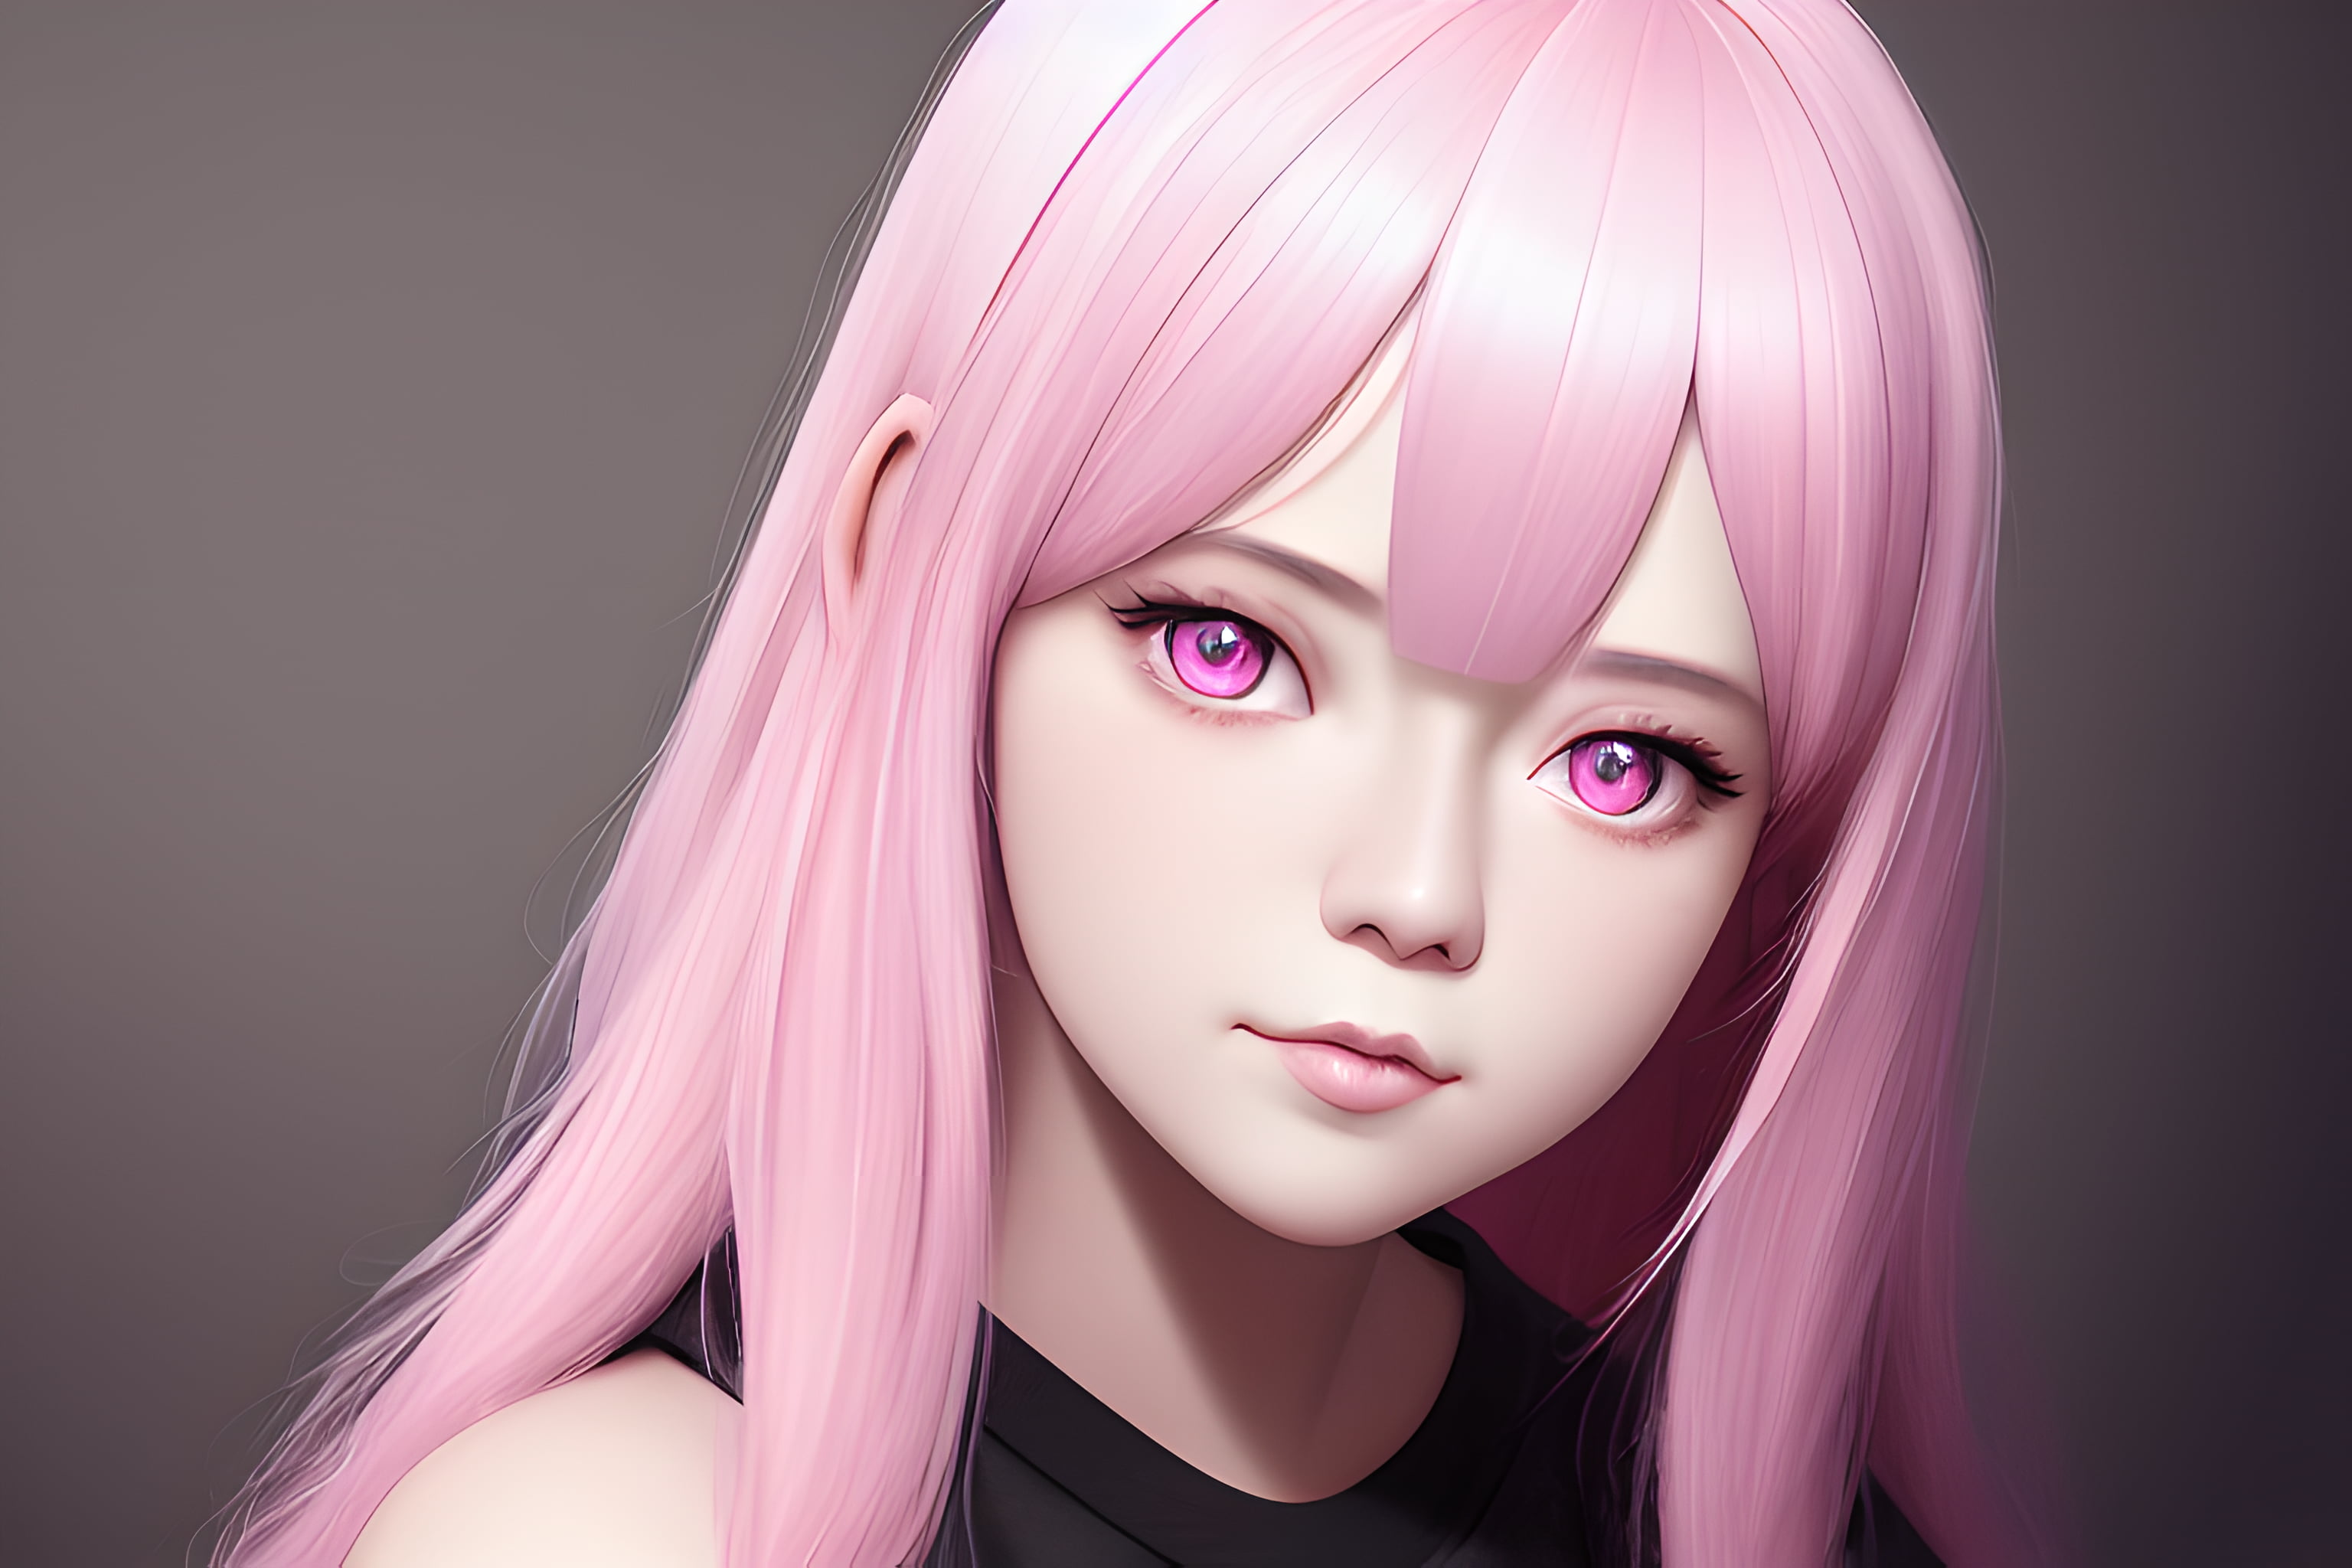 Free download | HD wallpaper: pink hair, anime girls, Sakura (Naruto ...